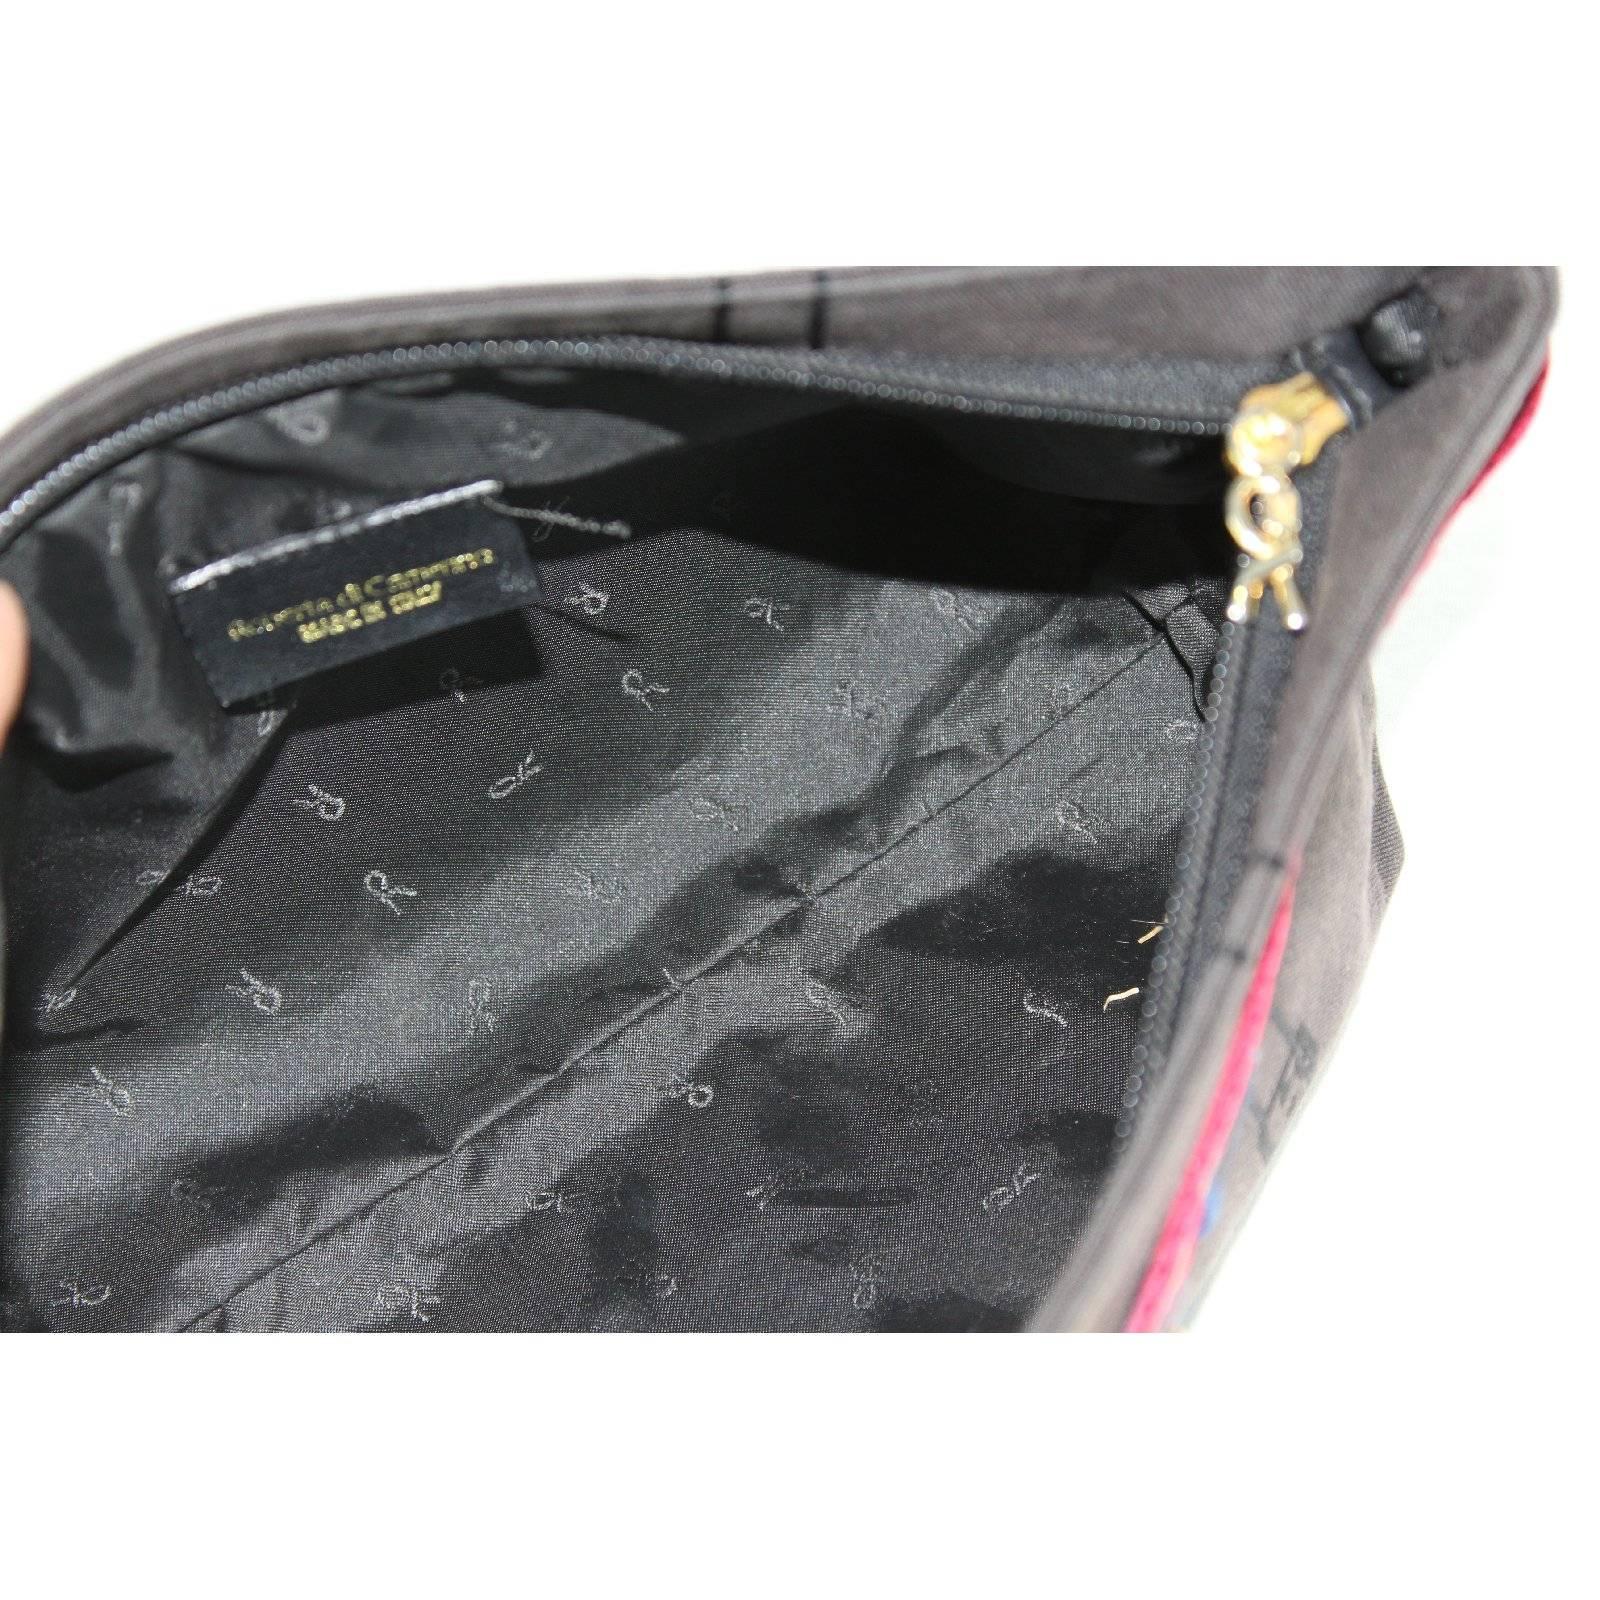 Roberta di Camerino black cotton pochette handbag 1980s italy vintage clutche For Sale 2